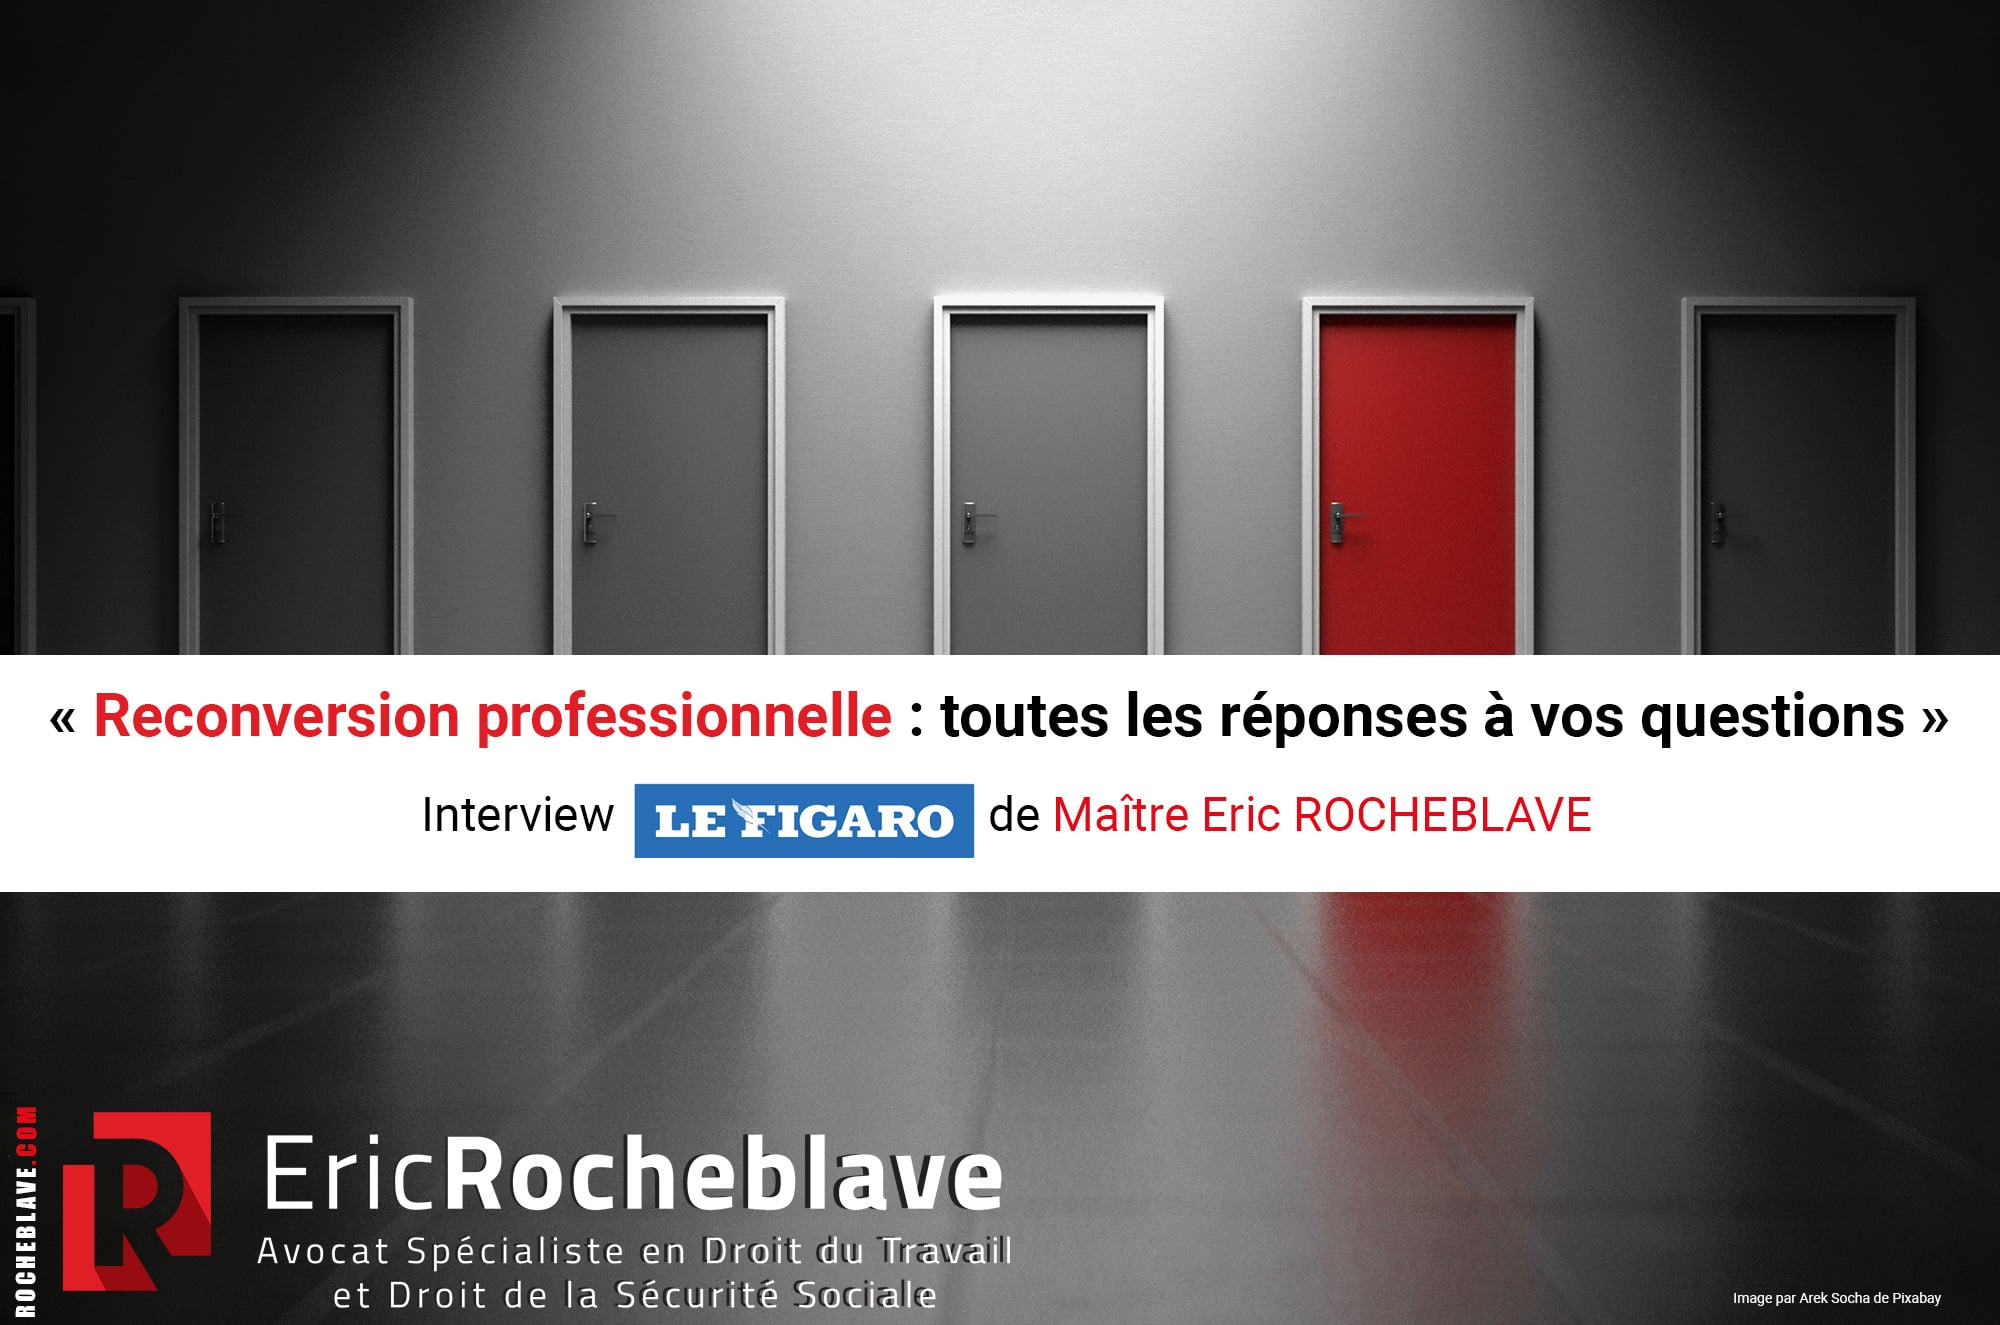 « Reconversion professionnelle : toutes les réponses à vos questions » Interview Le Figaro de Maître Eric ROCHEBLAVE